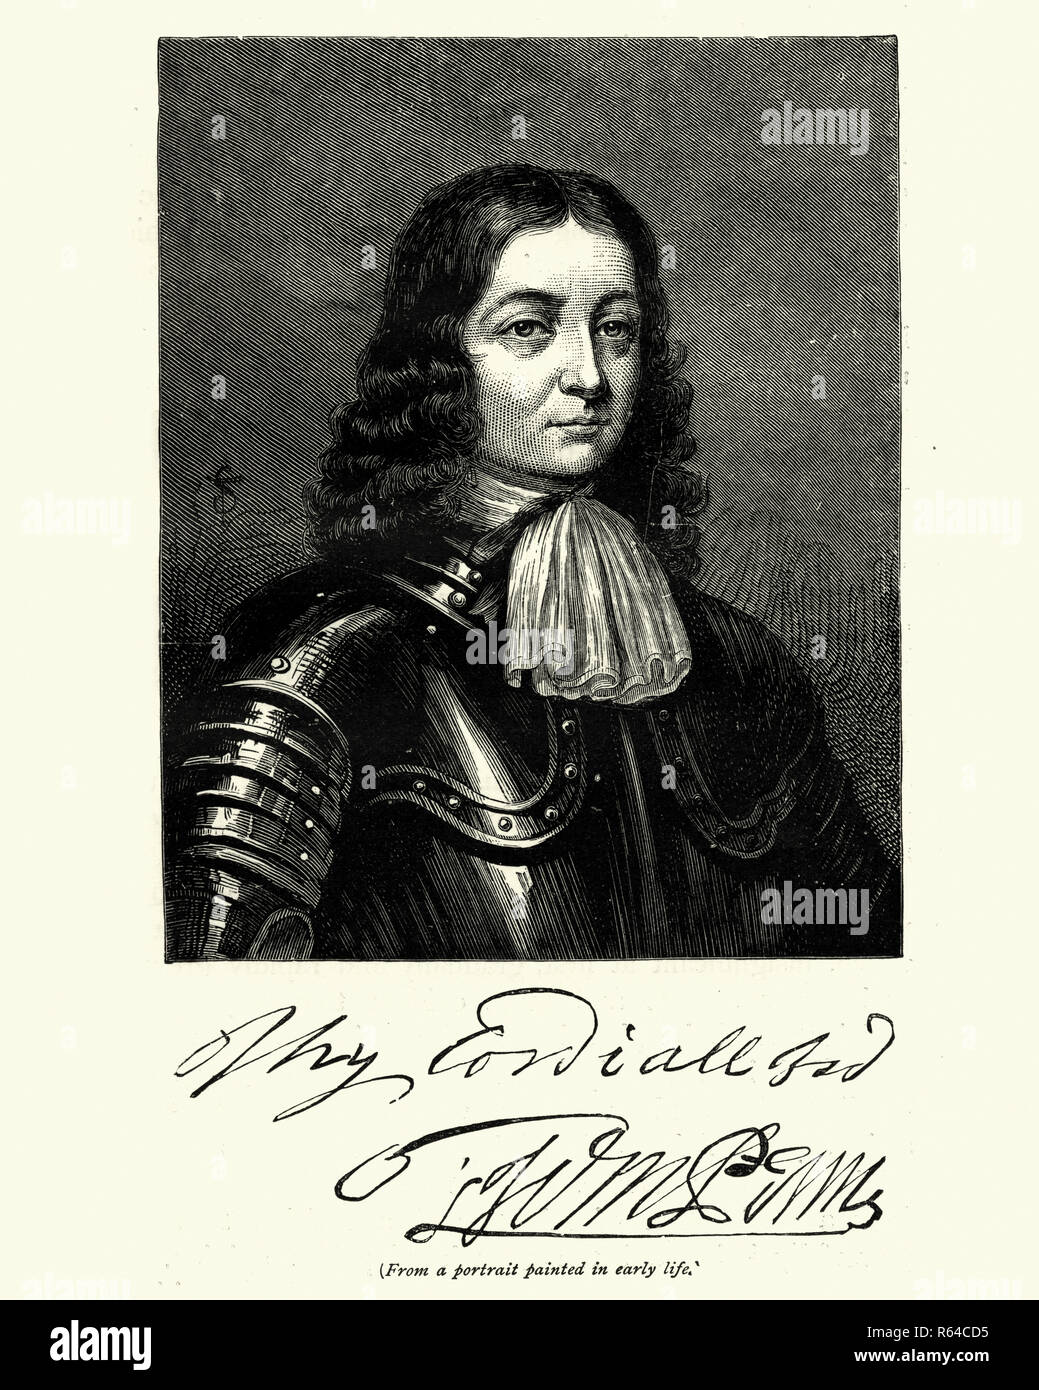 Vinatge Gravure de William Penn, (14 octobre 1644 - 30 juillet 1718) était le fils de Sir William Penn, et était un noble anglais, écrivain, début de Quaker, et fondateur de la colonie d'Amérique du Nord la Province de Pennsylvanie. Banque D'Images